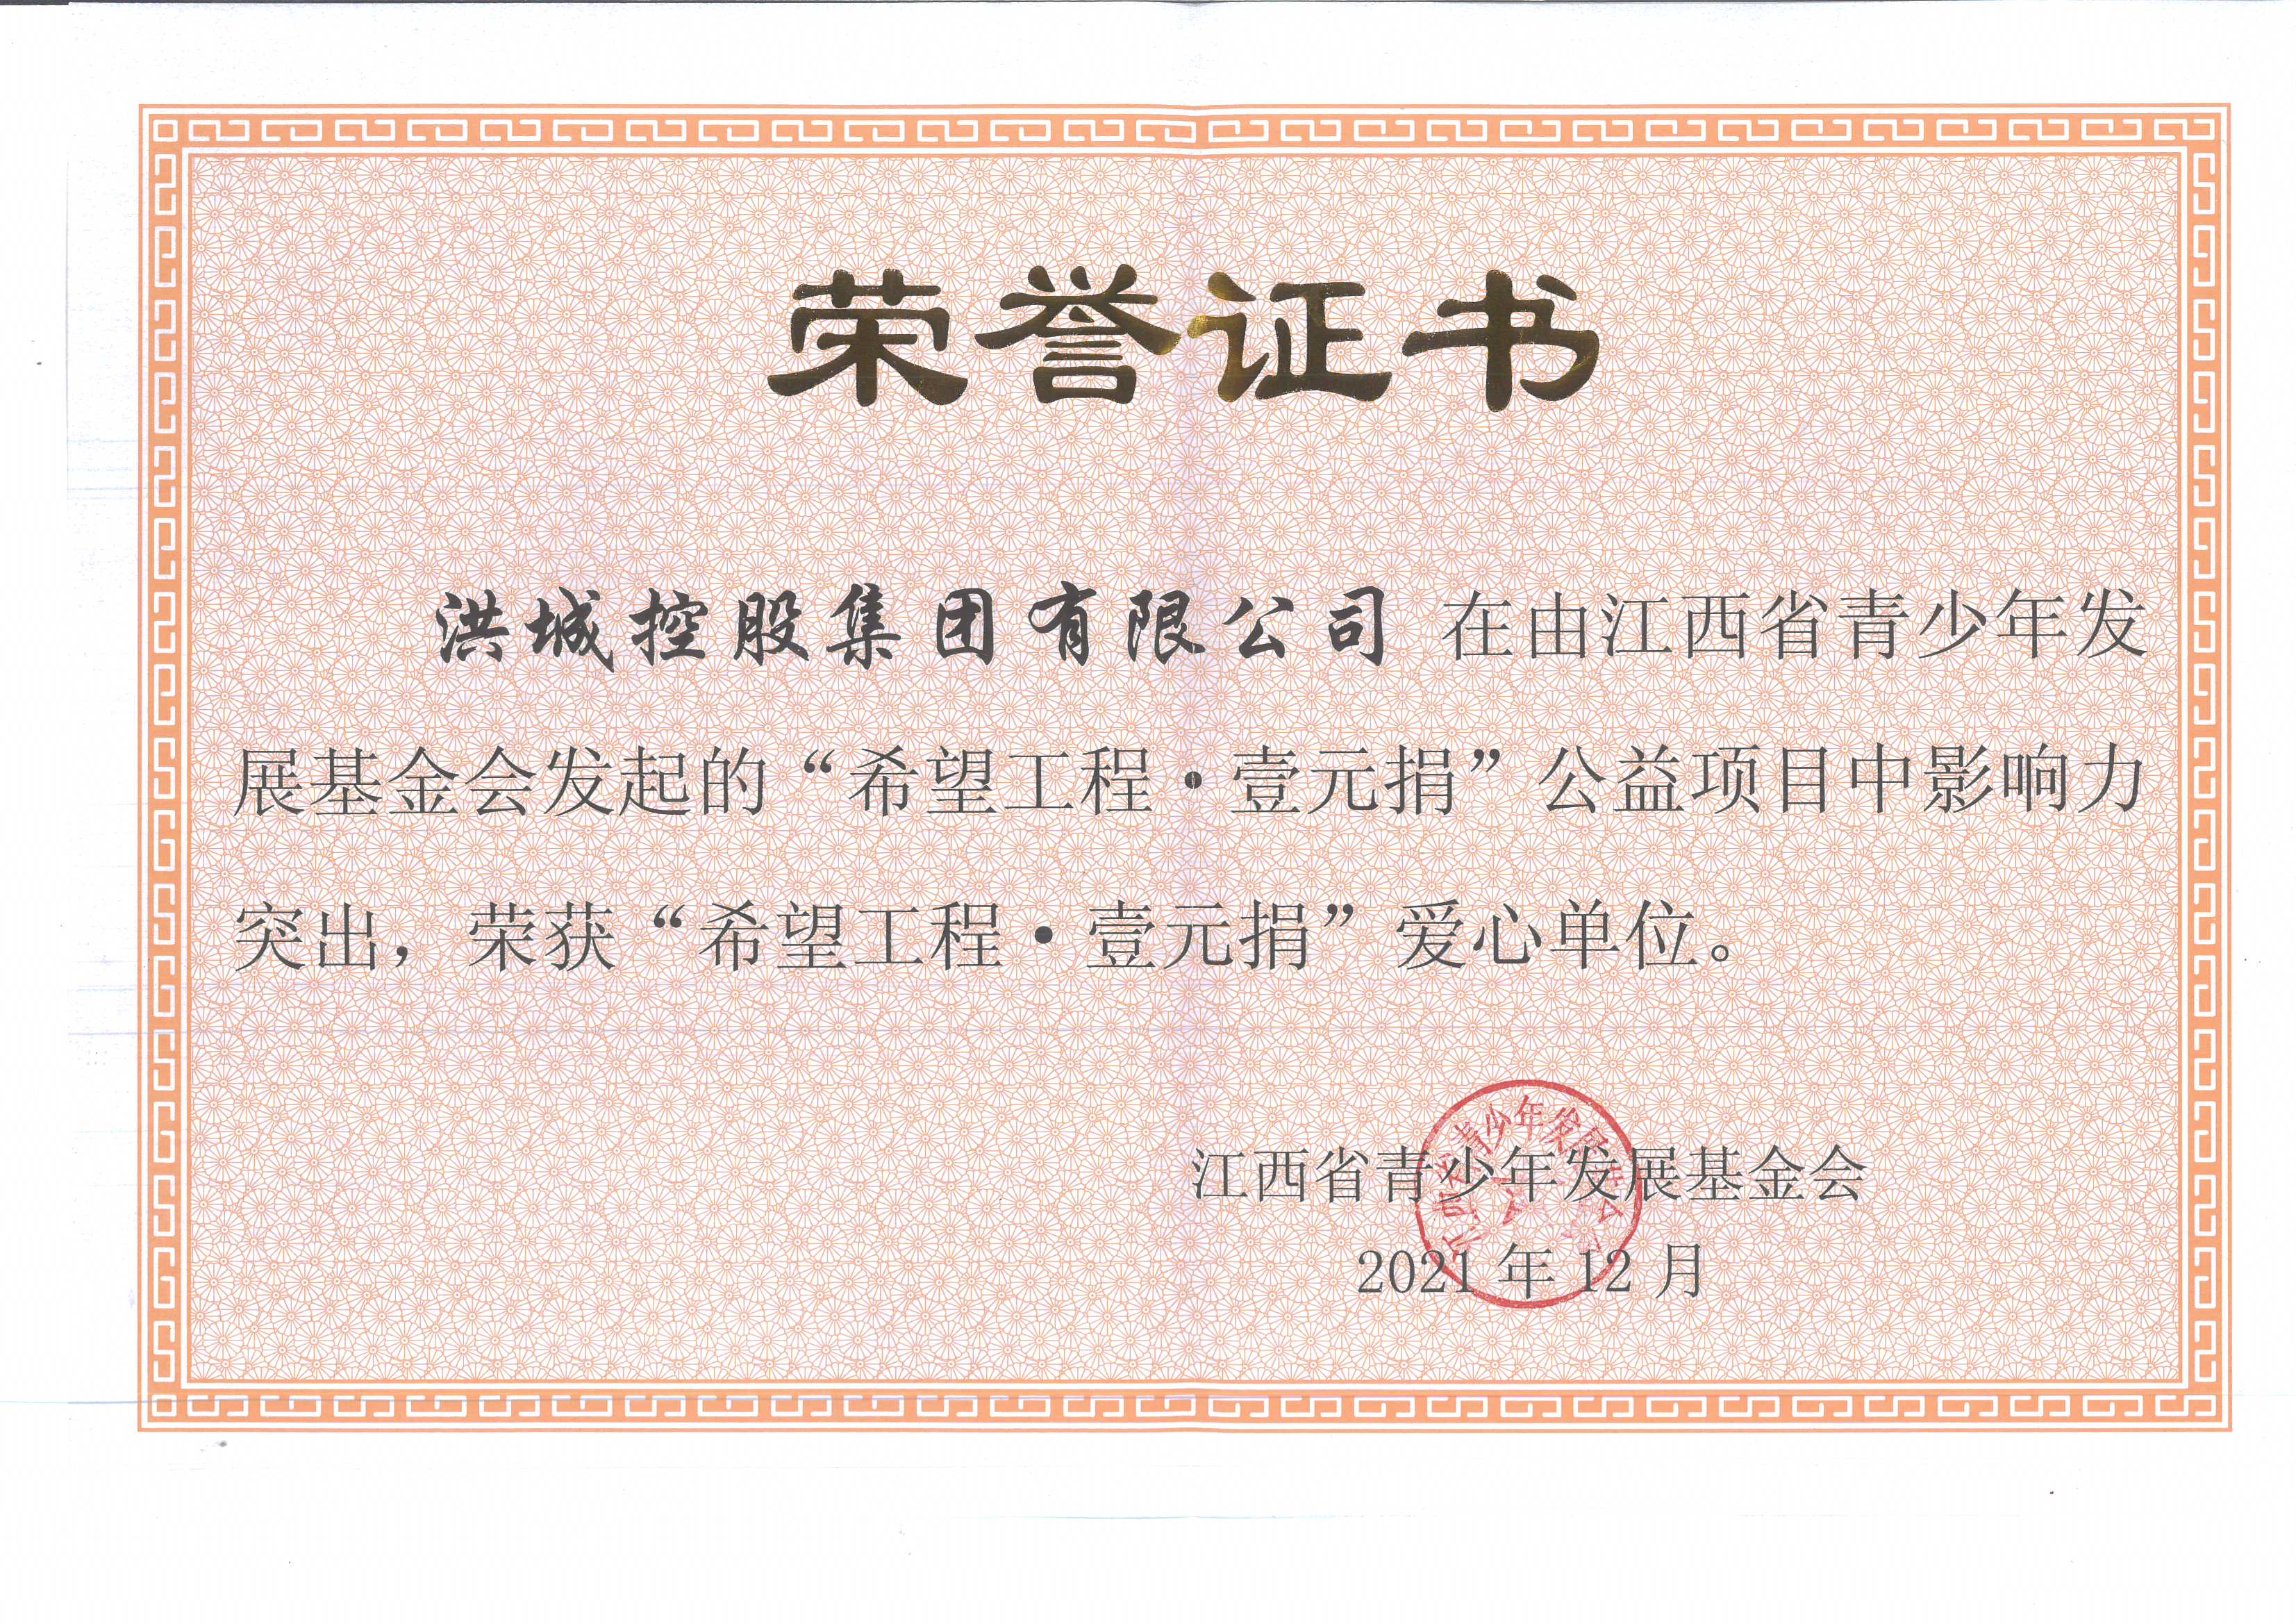 洪城控股集團榮獲江西省青少年發展基金會 “愛心單位”榮譽稱號